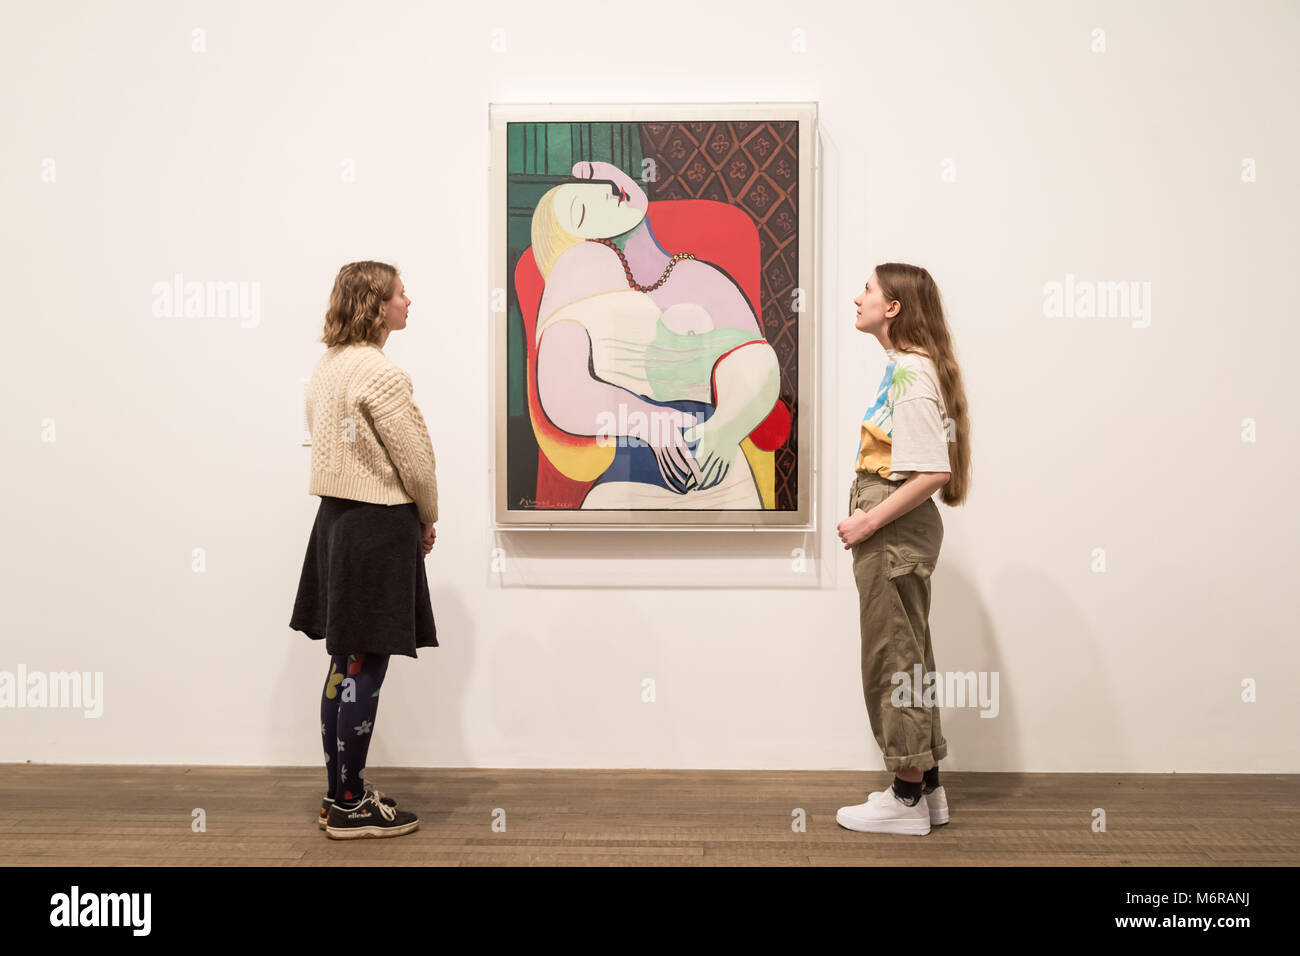 Londres, Royaume-Uni. 6 mars, 2018. 'Picasso 1932 - L'amour, la gloire, la tragédie' exhibition s'ouvre à la Tate Modern gallery. Mettant en vedette une année charnière dans la vie de l'artiste lorsqu'il a cimenté son héritage comme un artiste de premier plan à l'échelle mondiale, plus de 100 de ses œuvres sont exposées. Crédit : Guy Josse/Alamy Live News Banque D'Images